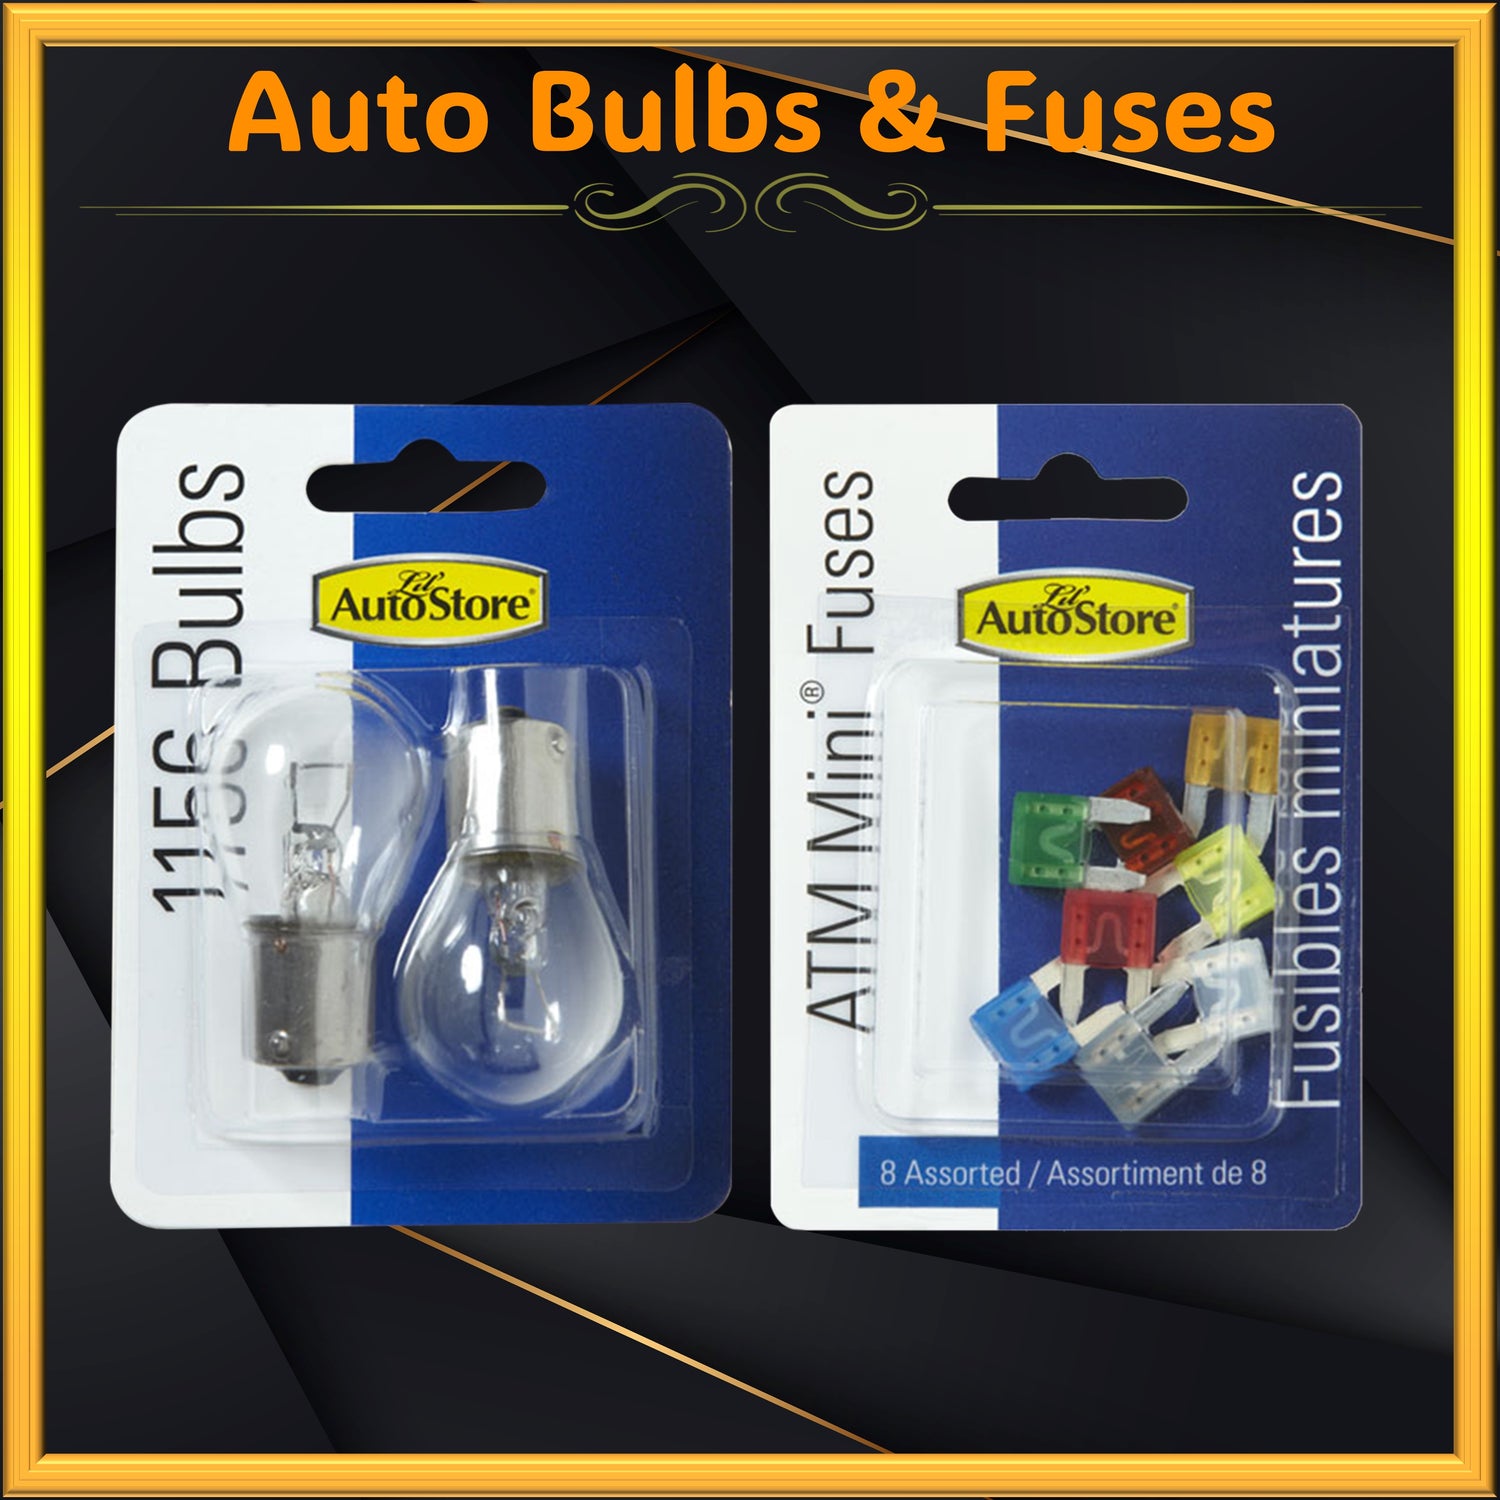 Auto Bulbs & Fuses